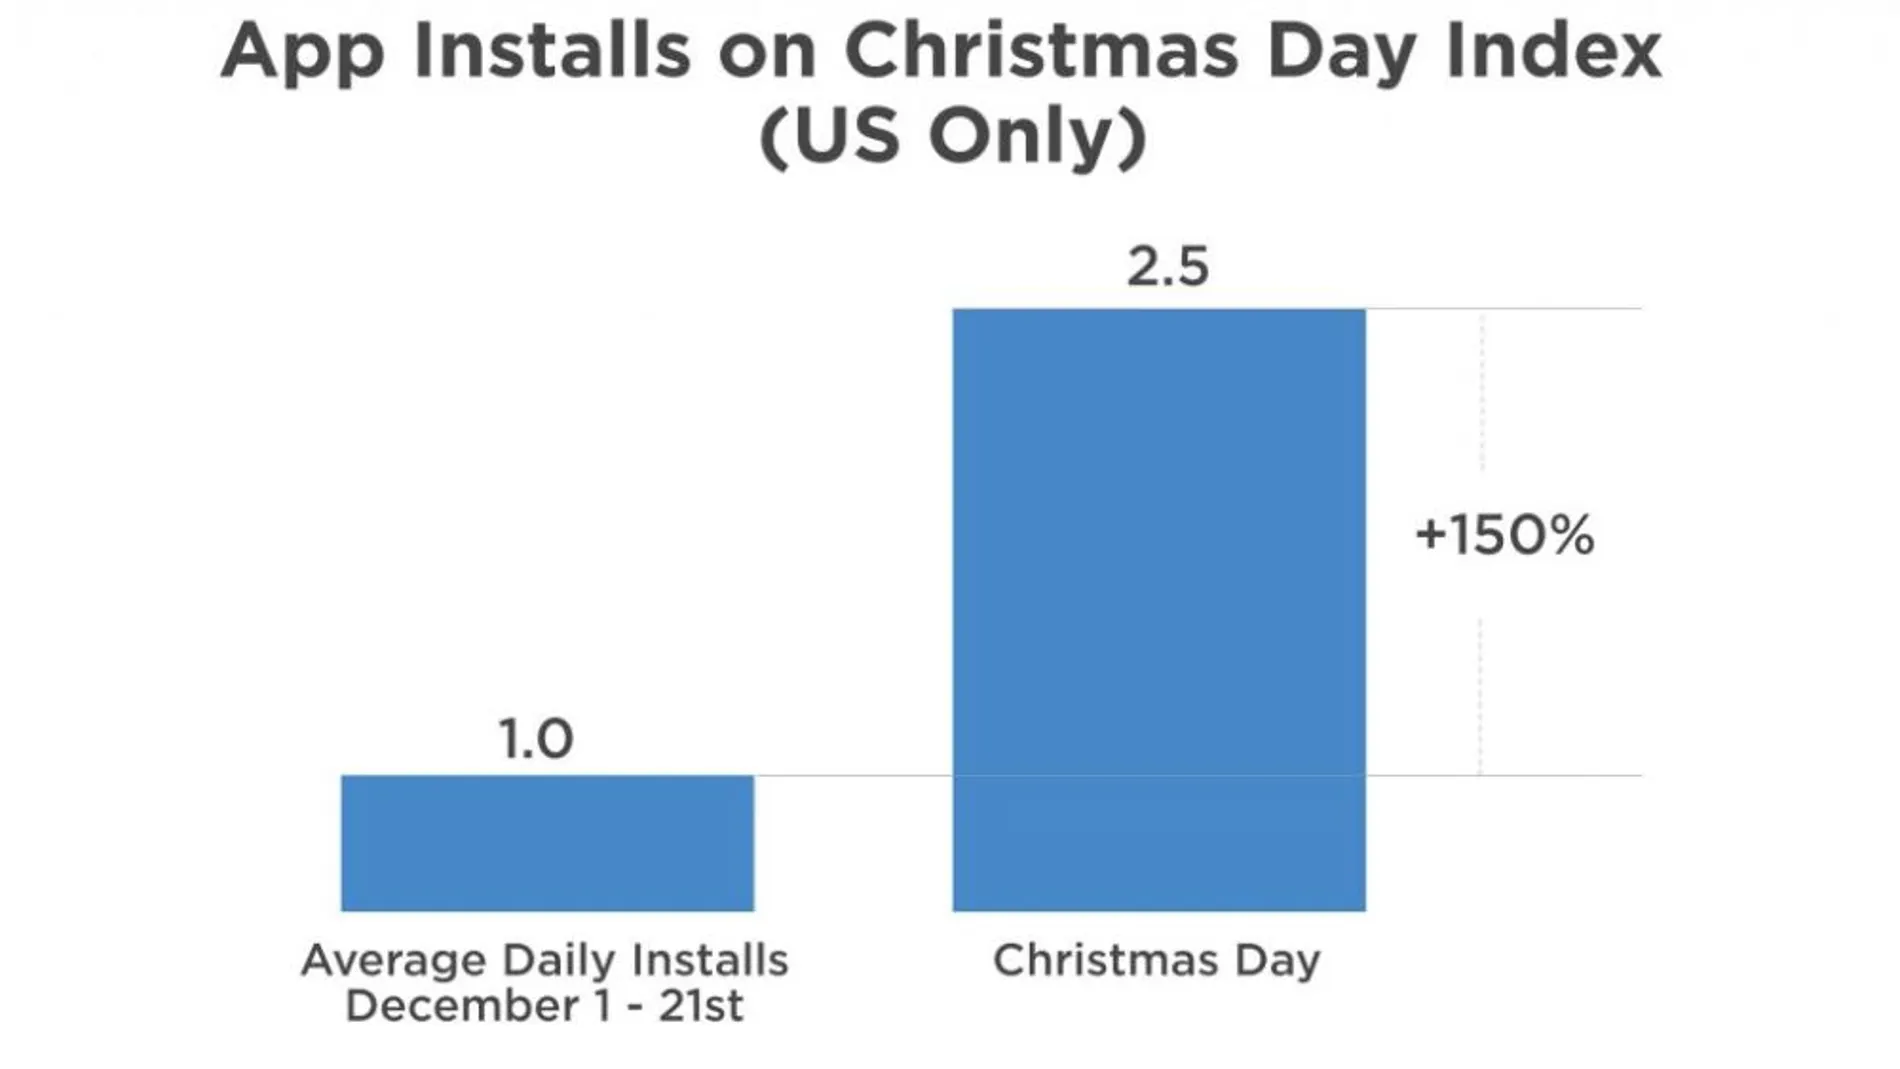 Las descargas diarias de apps aumentaron un 150% el día de Navidad